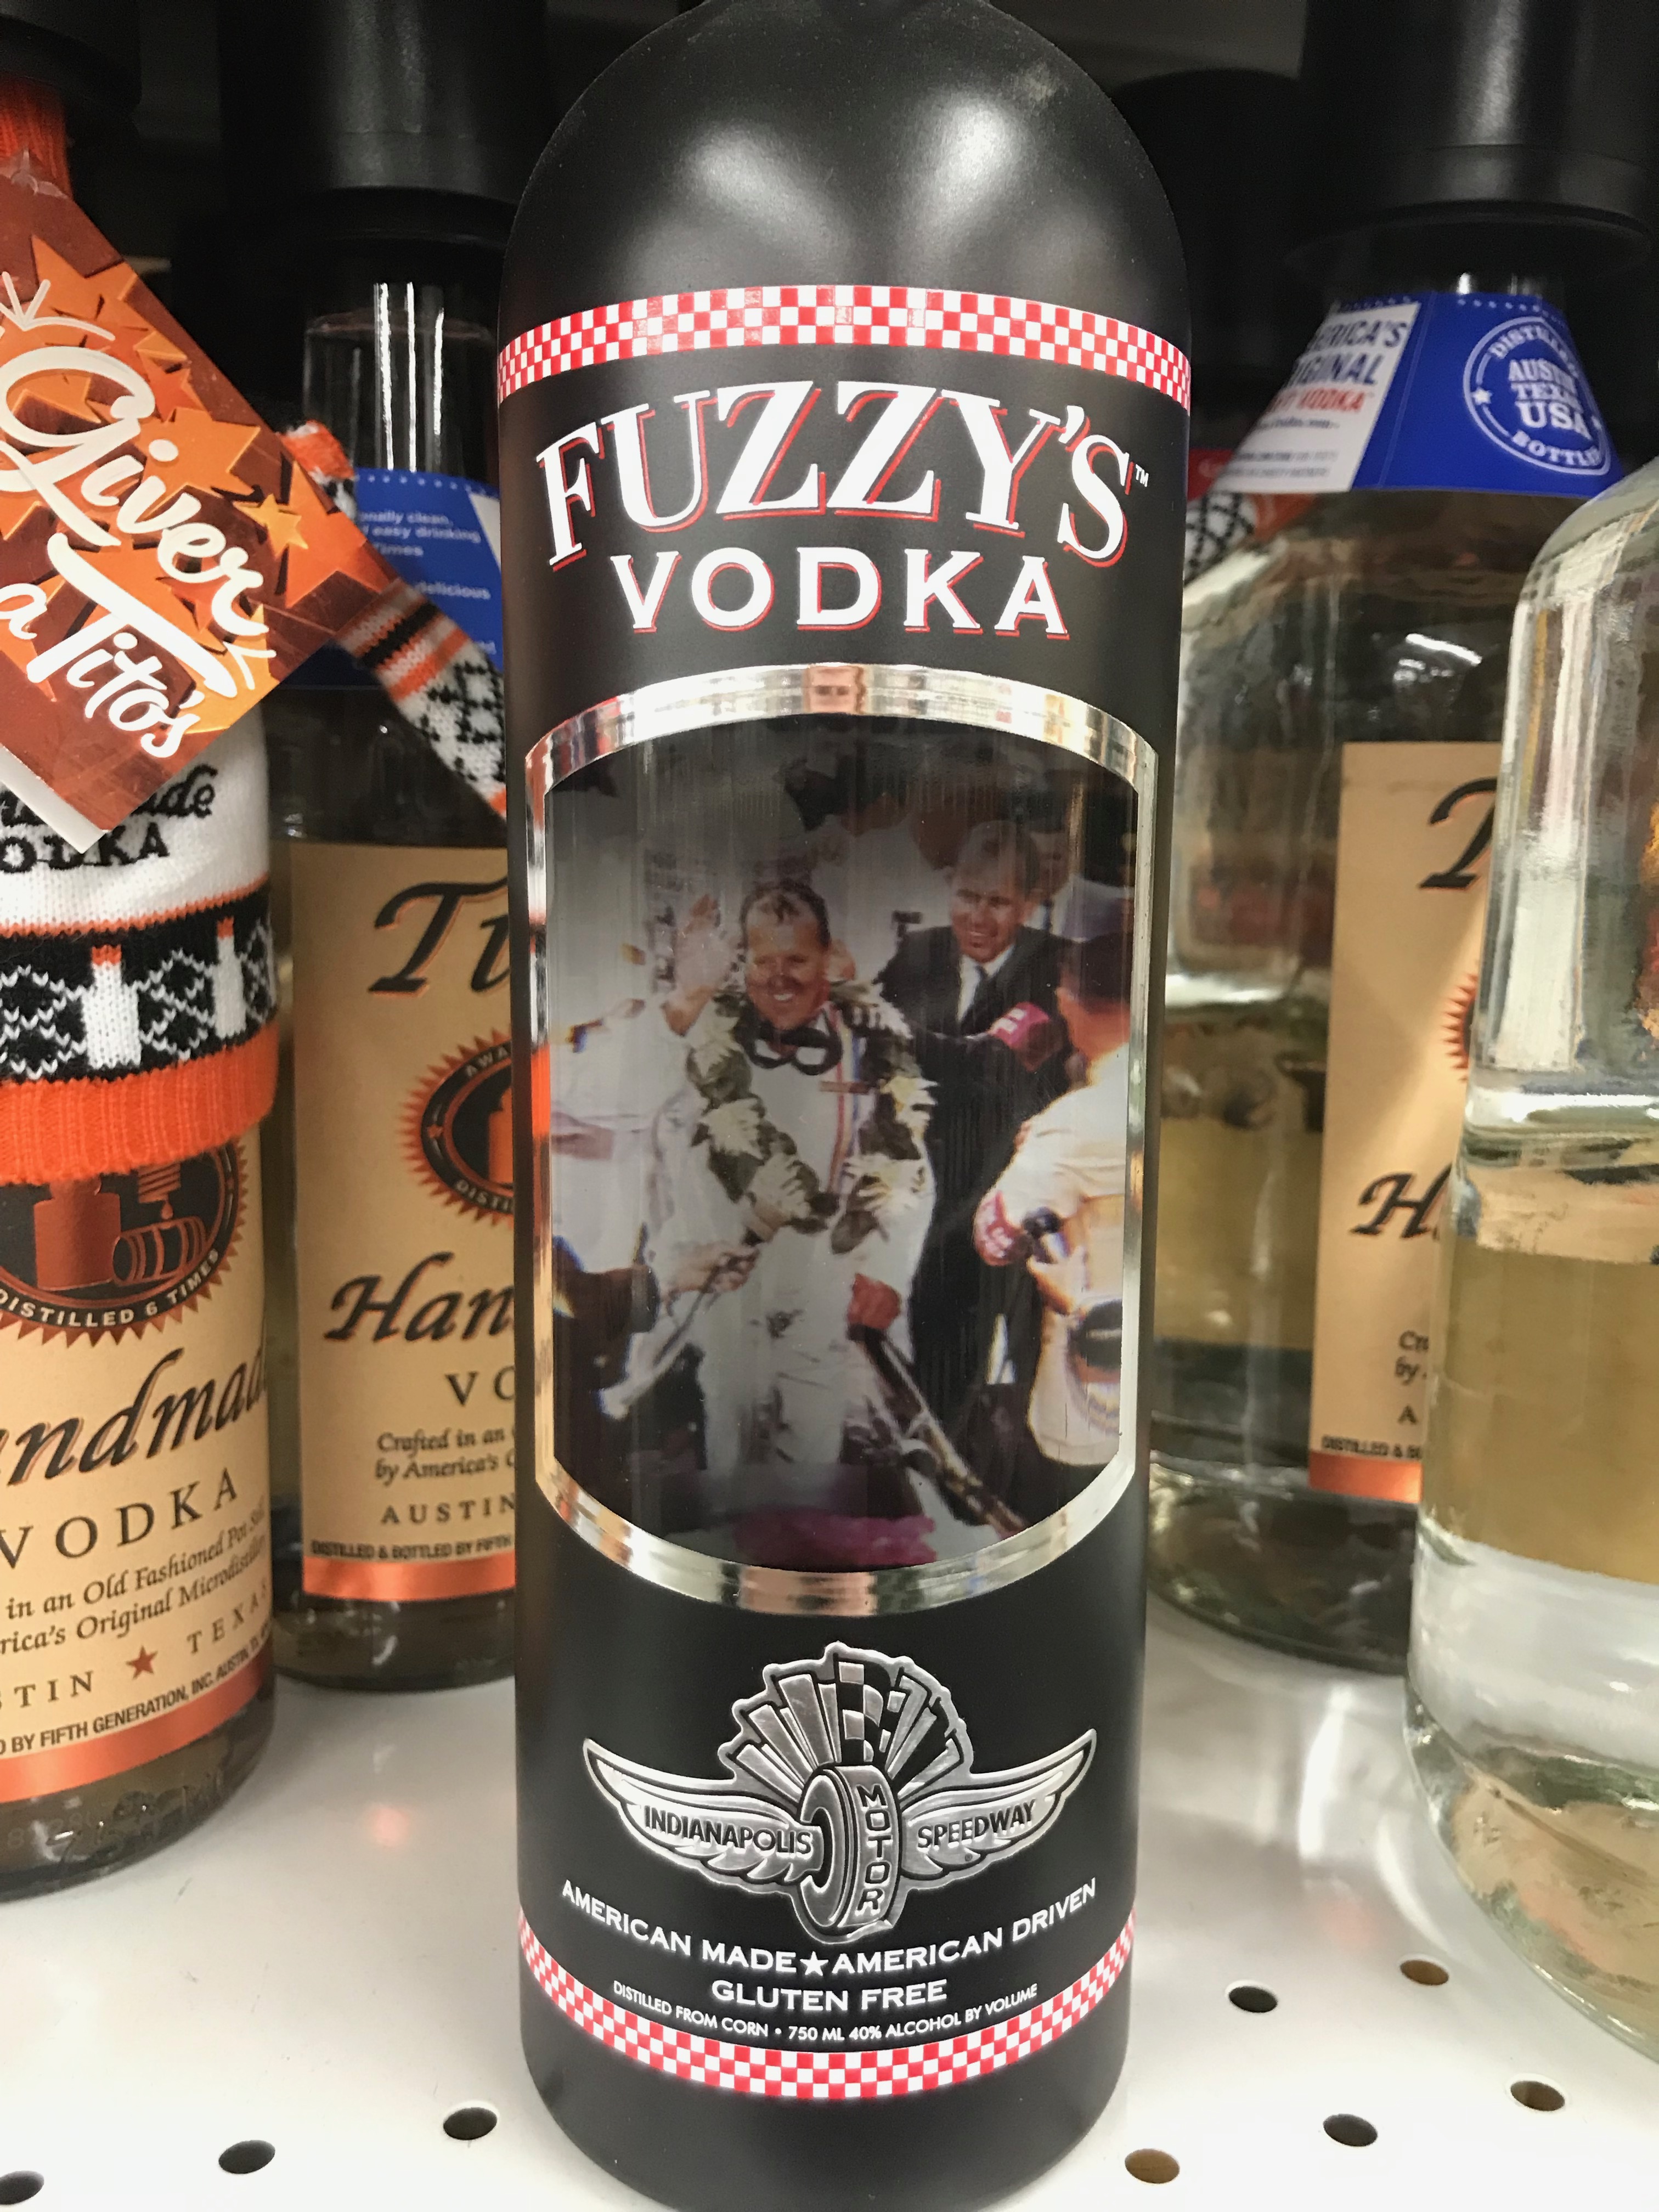 Shelf in store with Vodka bottles, bottle in center is Fuzzy's Vodka